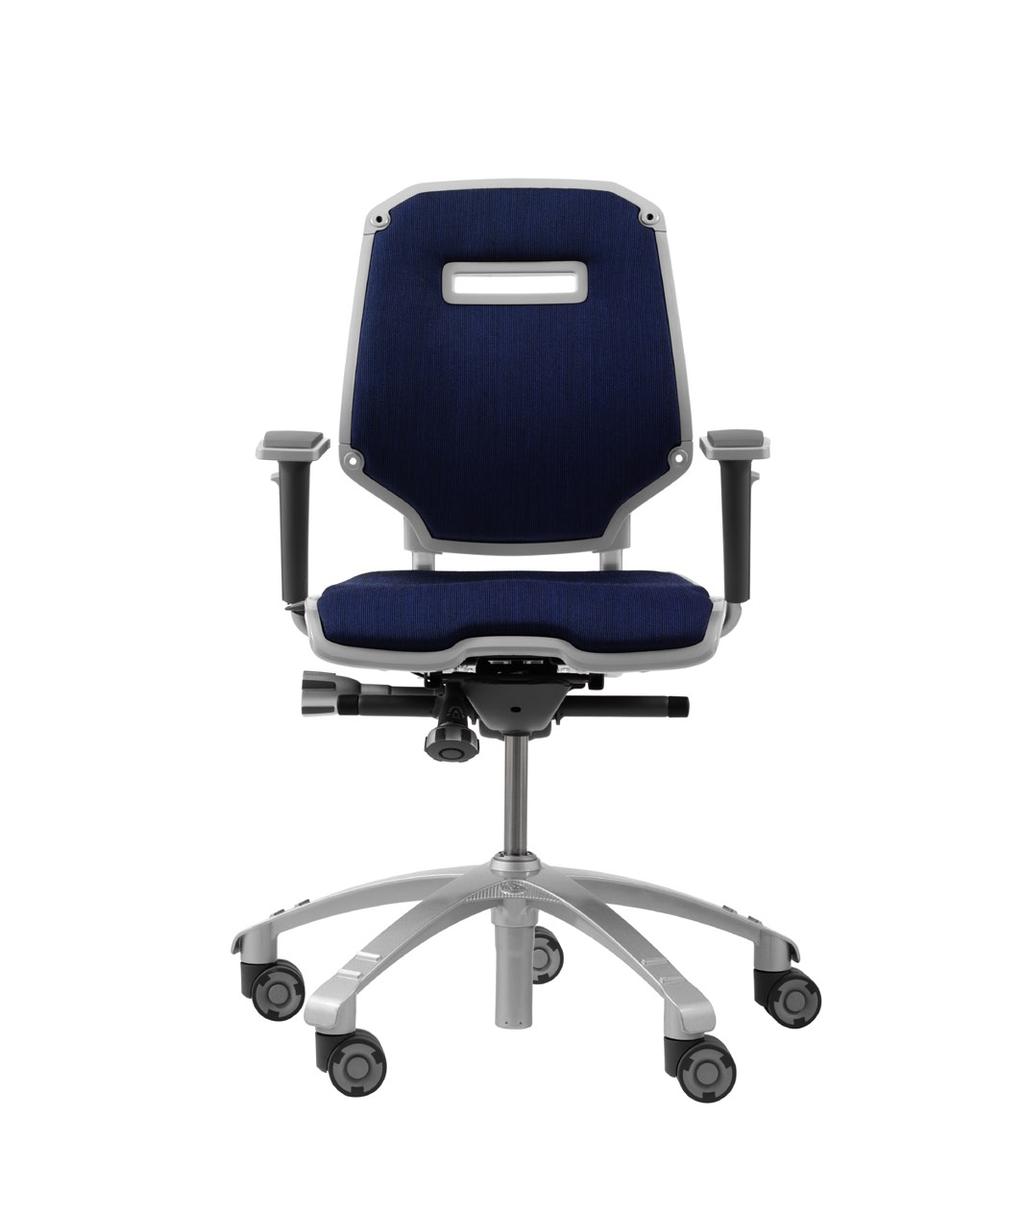 Een volledig flexibele kantoorstoel De RH Ambio kan aangepast worden aan alle werkomgevingen en alle gebruikers. De stoel is leverbaar in vier basisuitvoeringen en met een aantal opties.